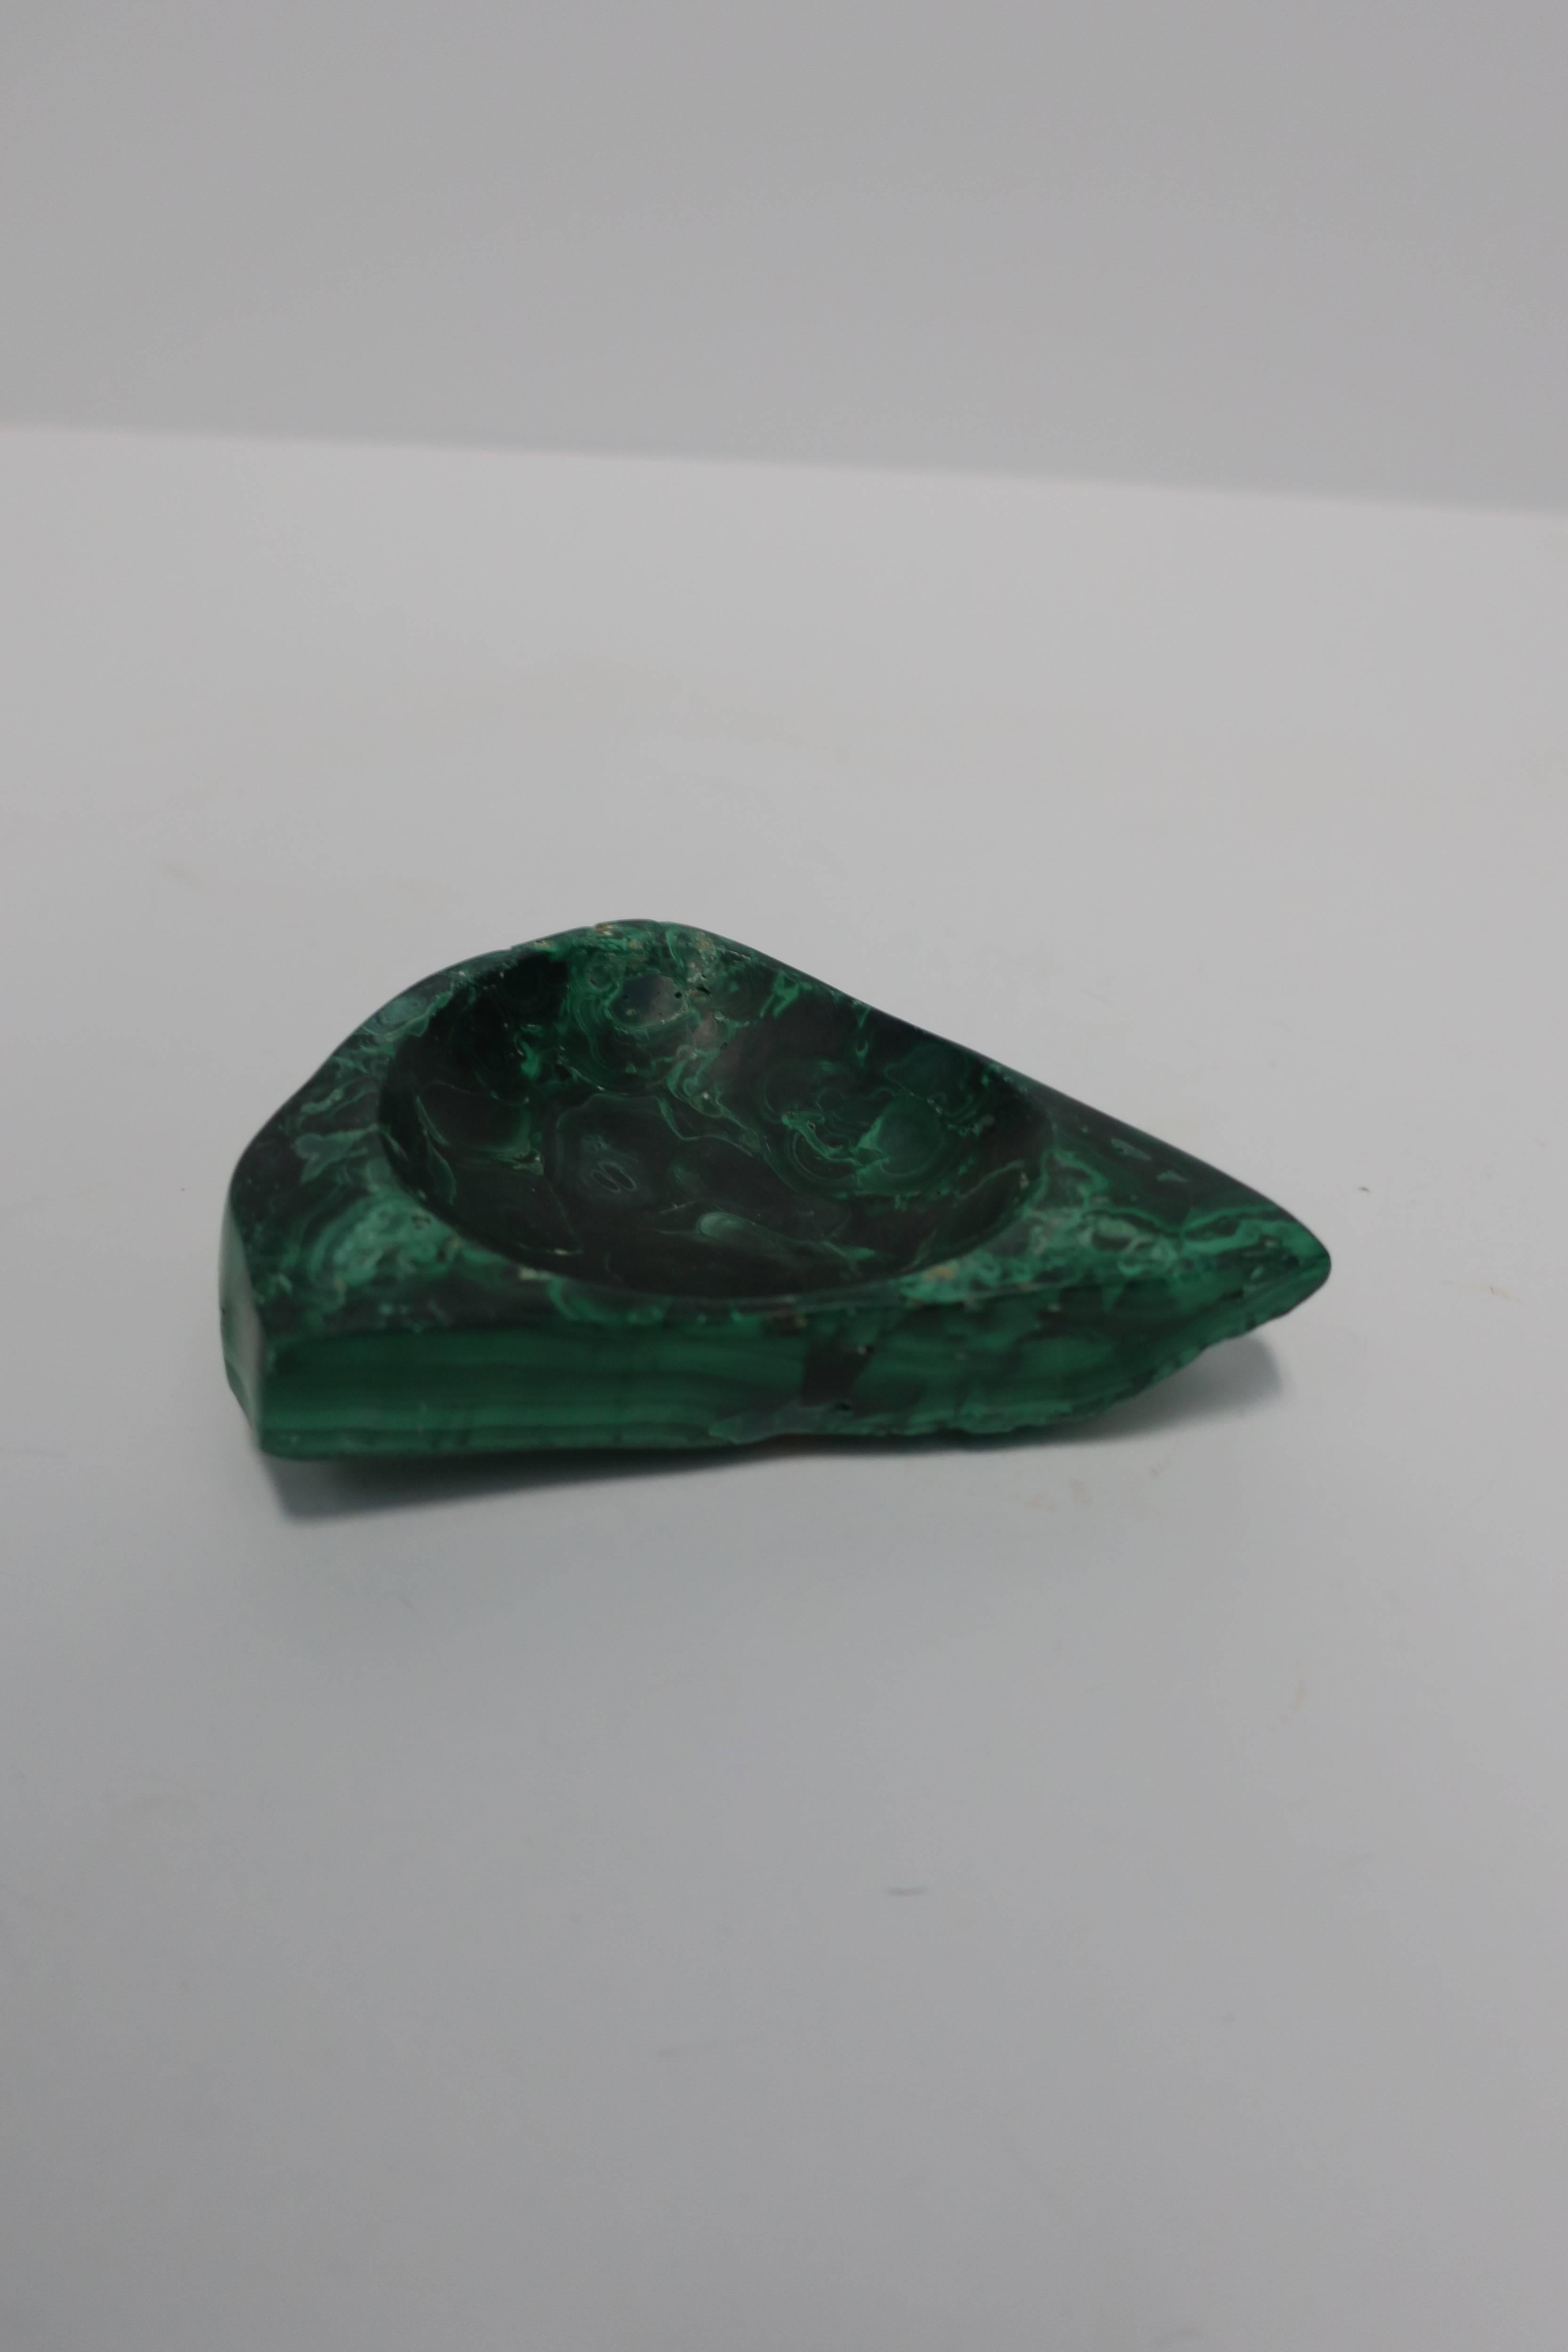 Green Malachite Desk Vessel or Jewelry Dish 4